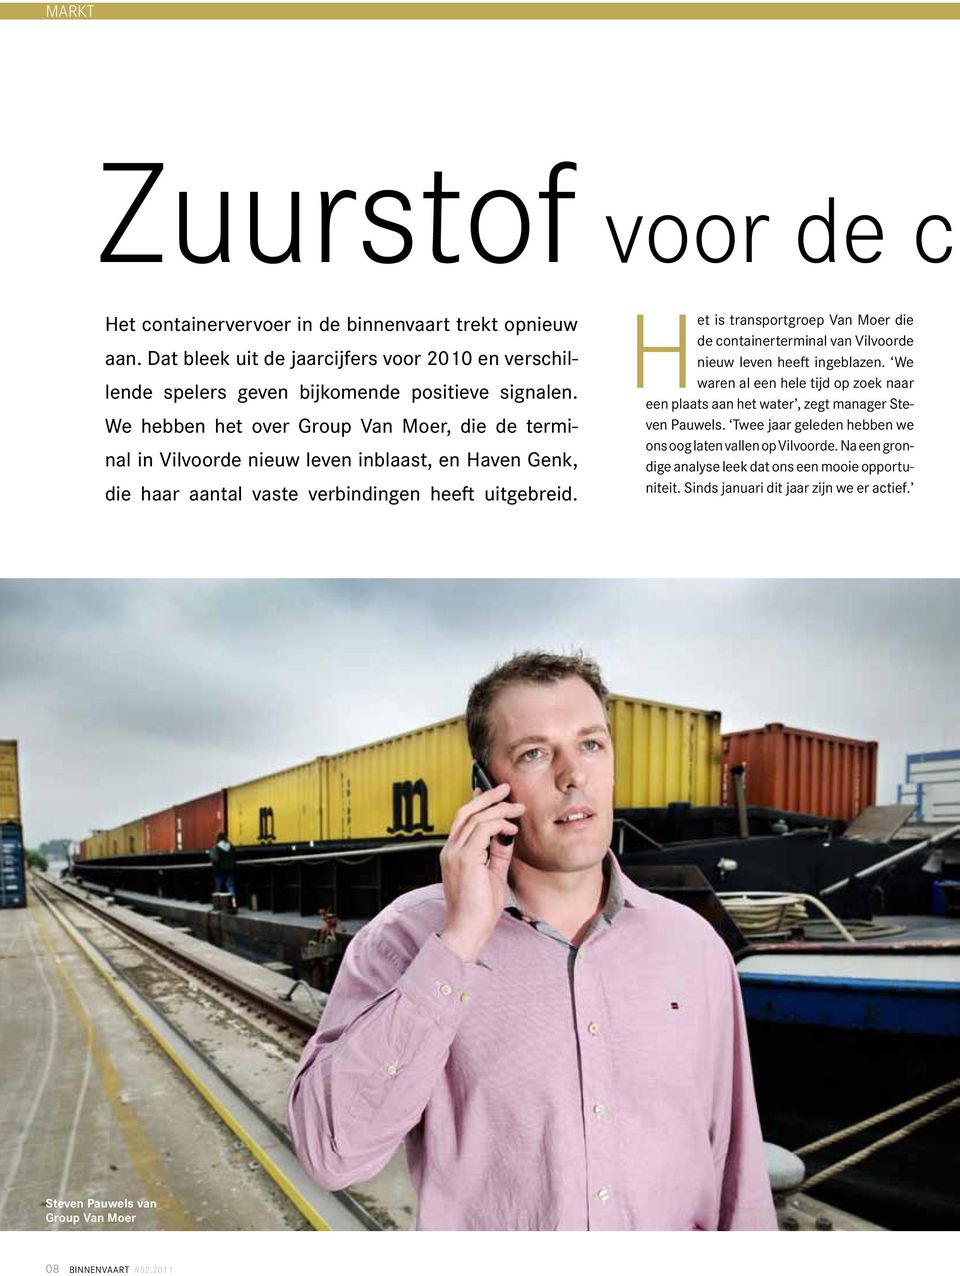 Het is transportgroep Van Moer die de containerterminal van Vilvoorde nieuw leven heeft ingeblazen.